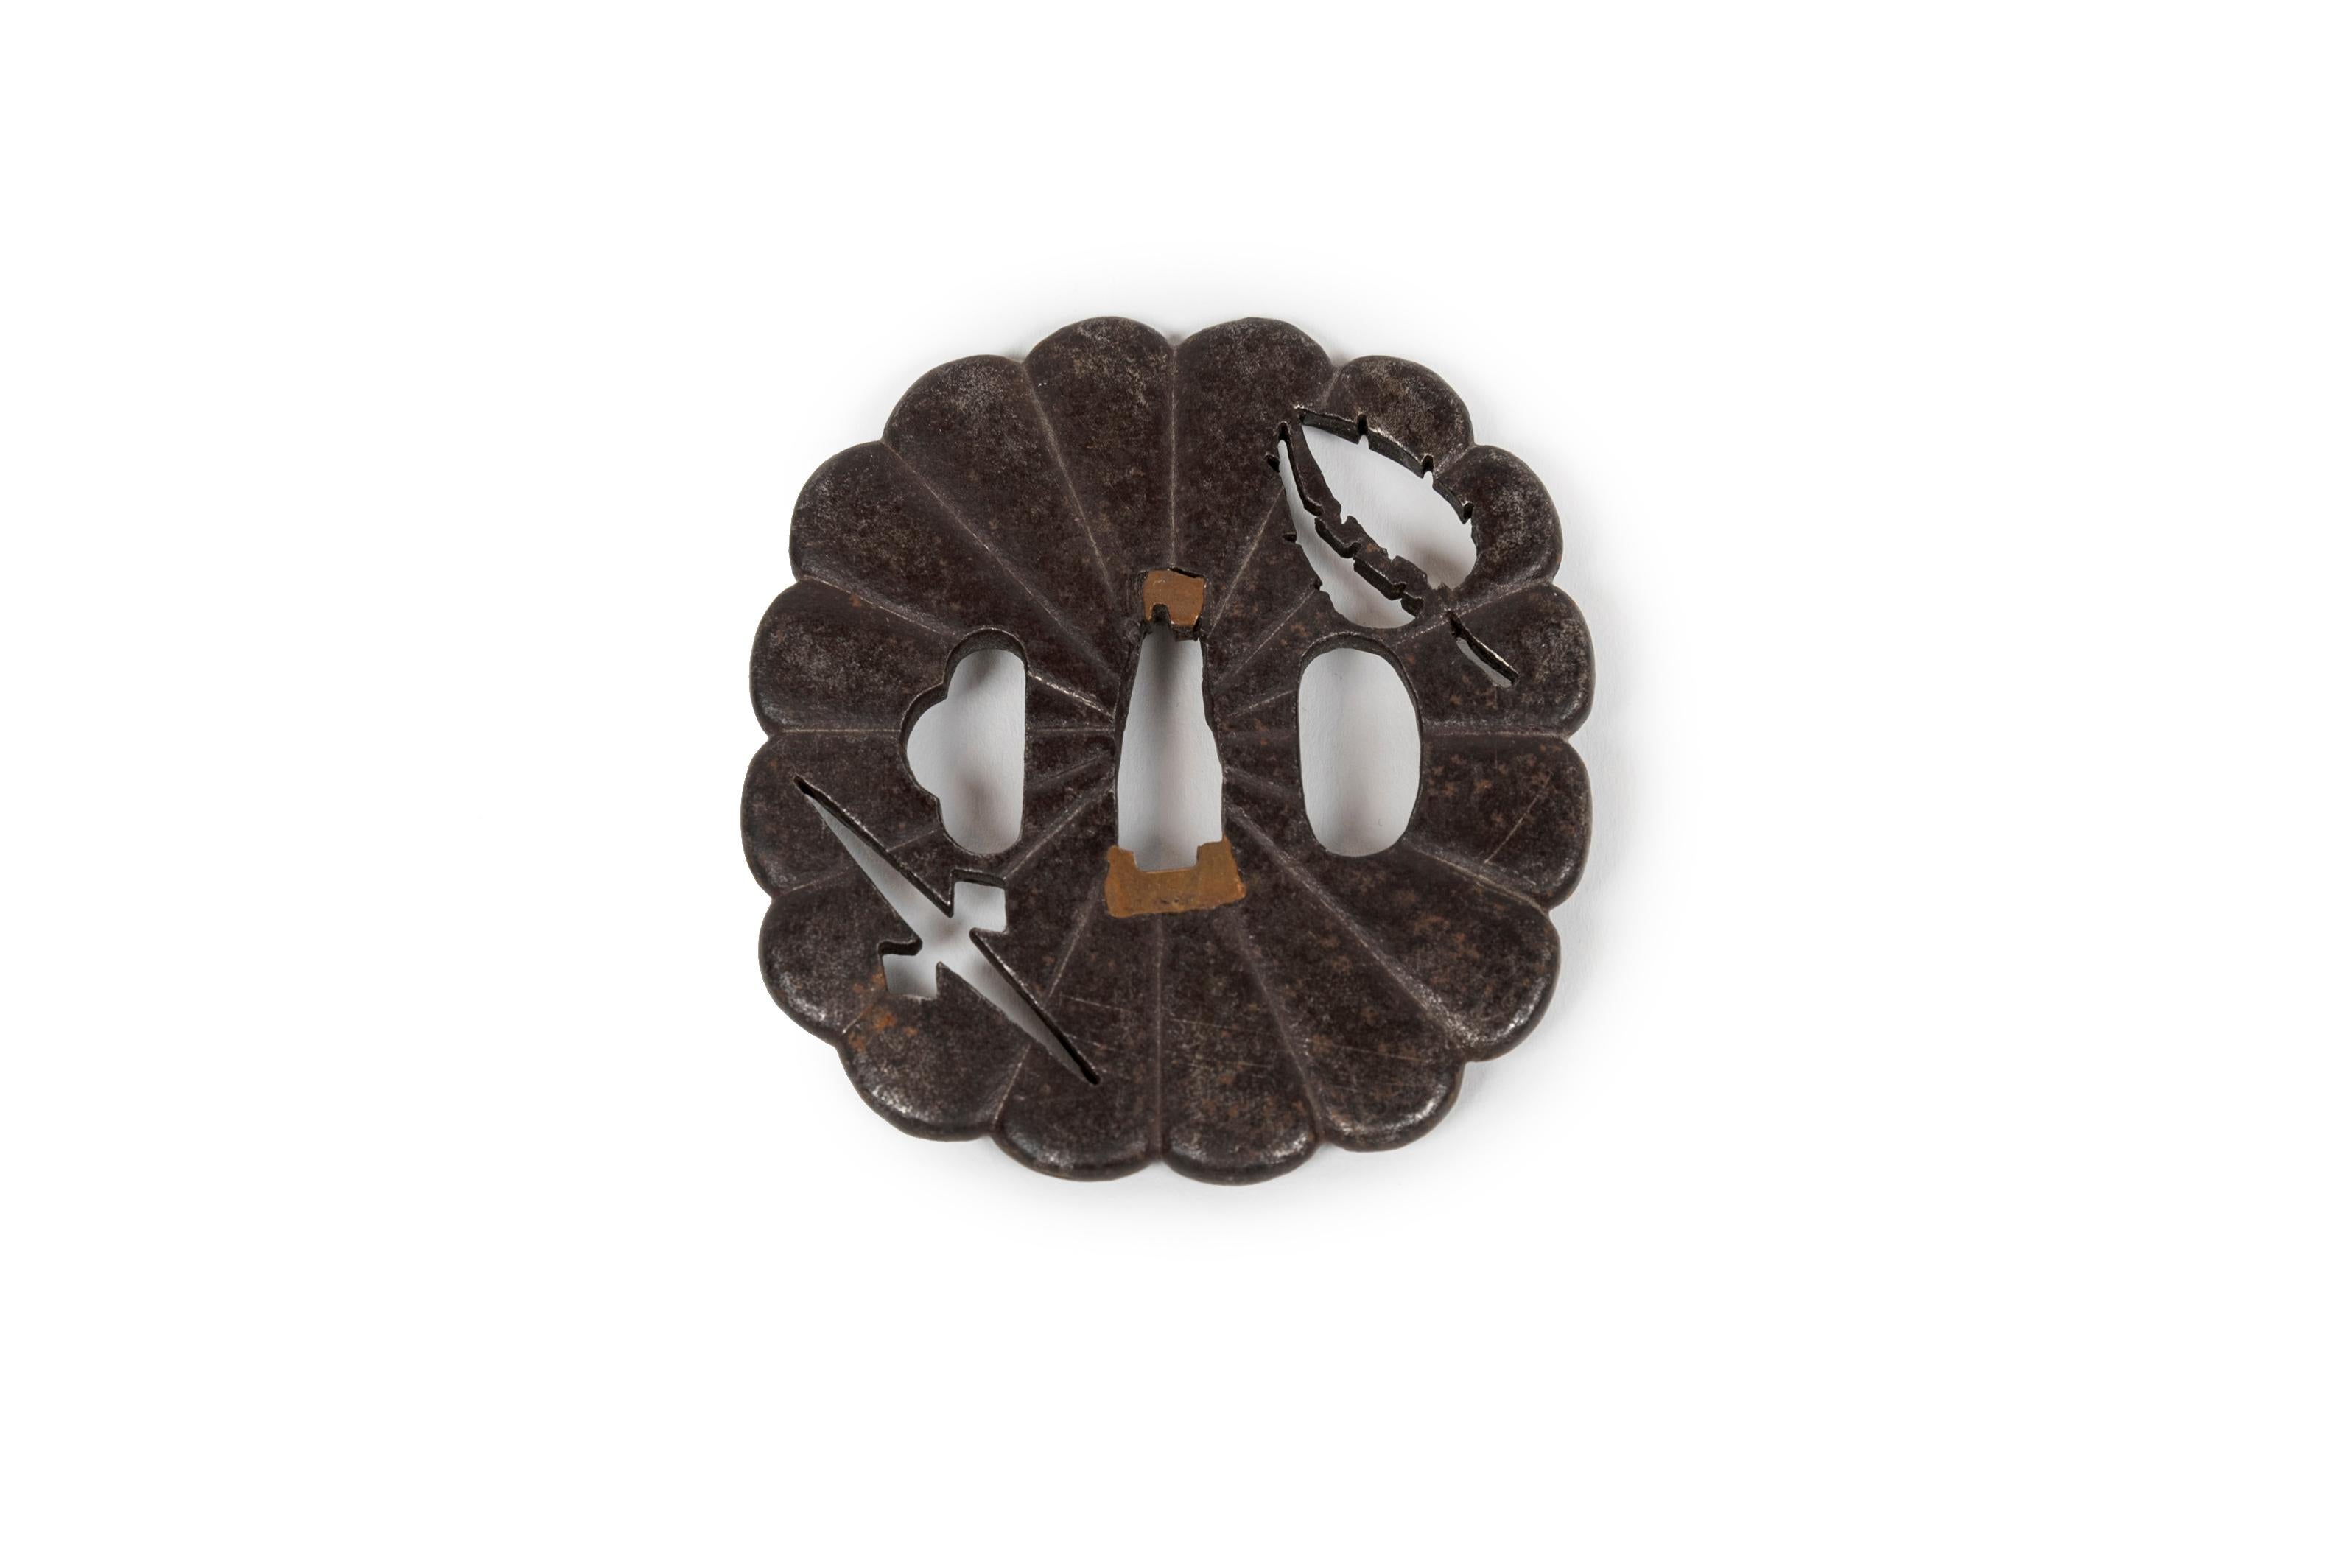 Eiserne Tsuba in Form einer Chrysantheme (Kikugata), durchbrochen im Negativ mit Blattwerk und geometrischen Mustern.

Chrysanthemenförmige Tsuba waren in der Edo-Zeit sehr beliebt, da die Blume als Symbol für Adel und Eleganz galt. Kikugata sind